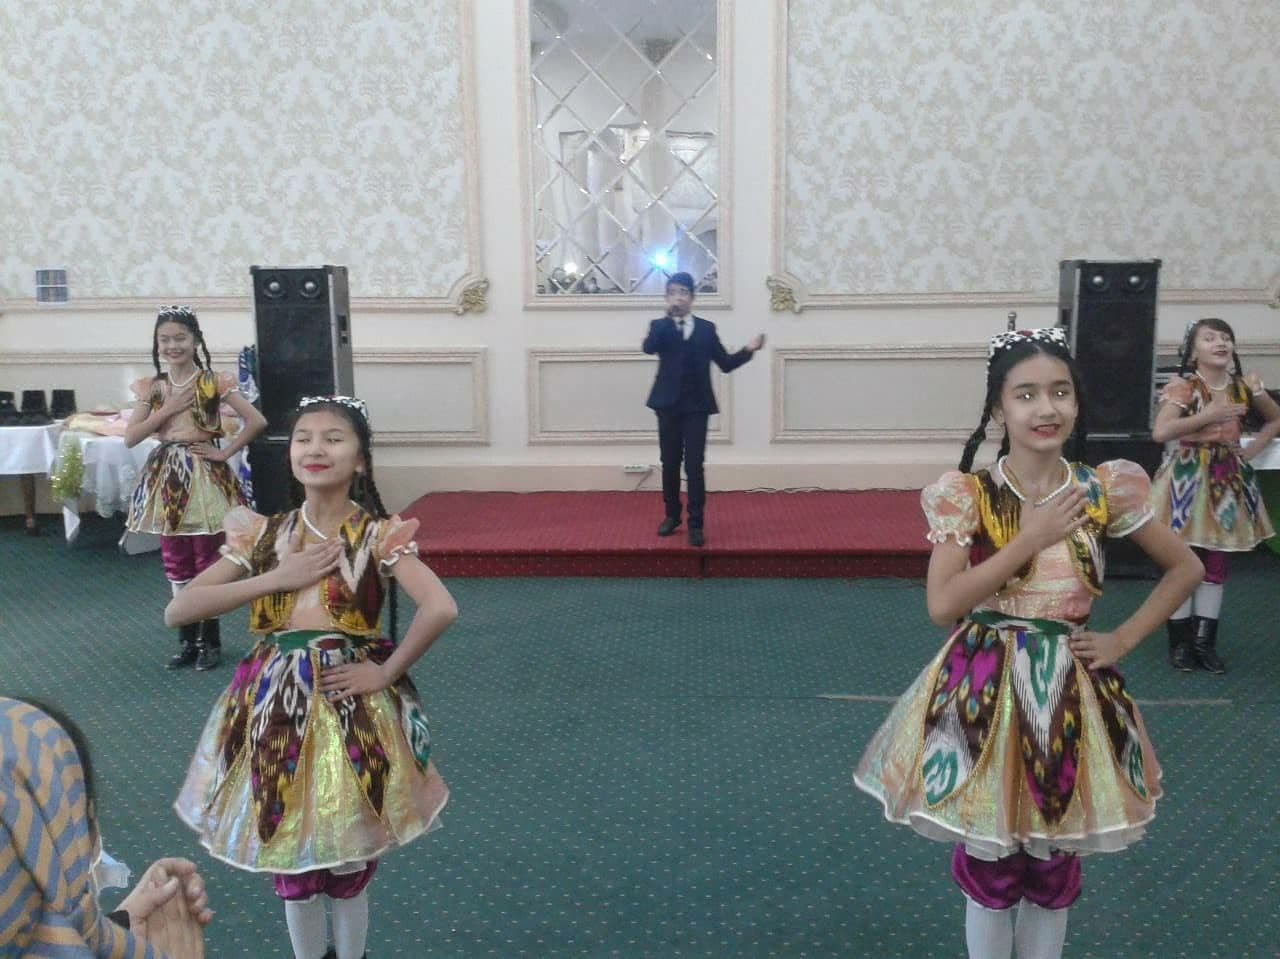 В Узбекистане на мероприятии девочки в платьях с коротким рукавом станцевали перед взрослыми в шапках и куртках — фото